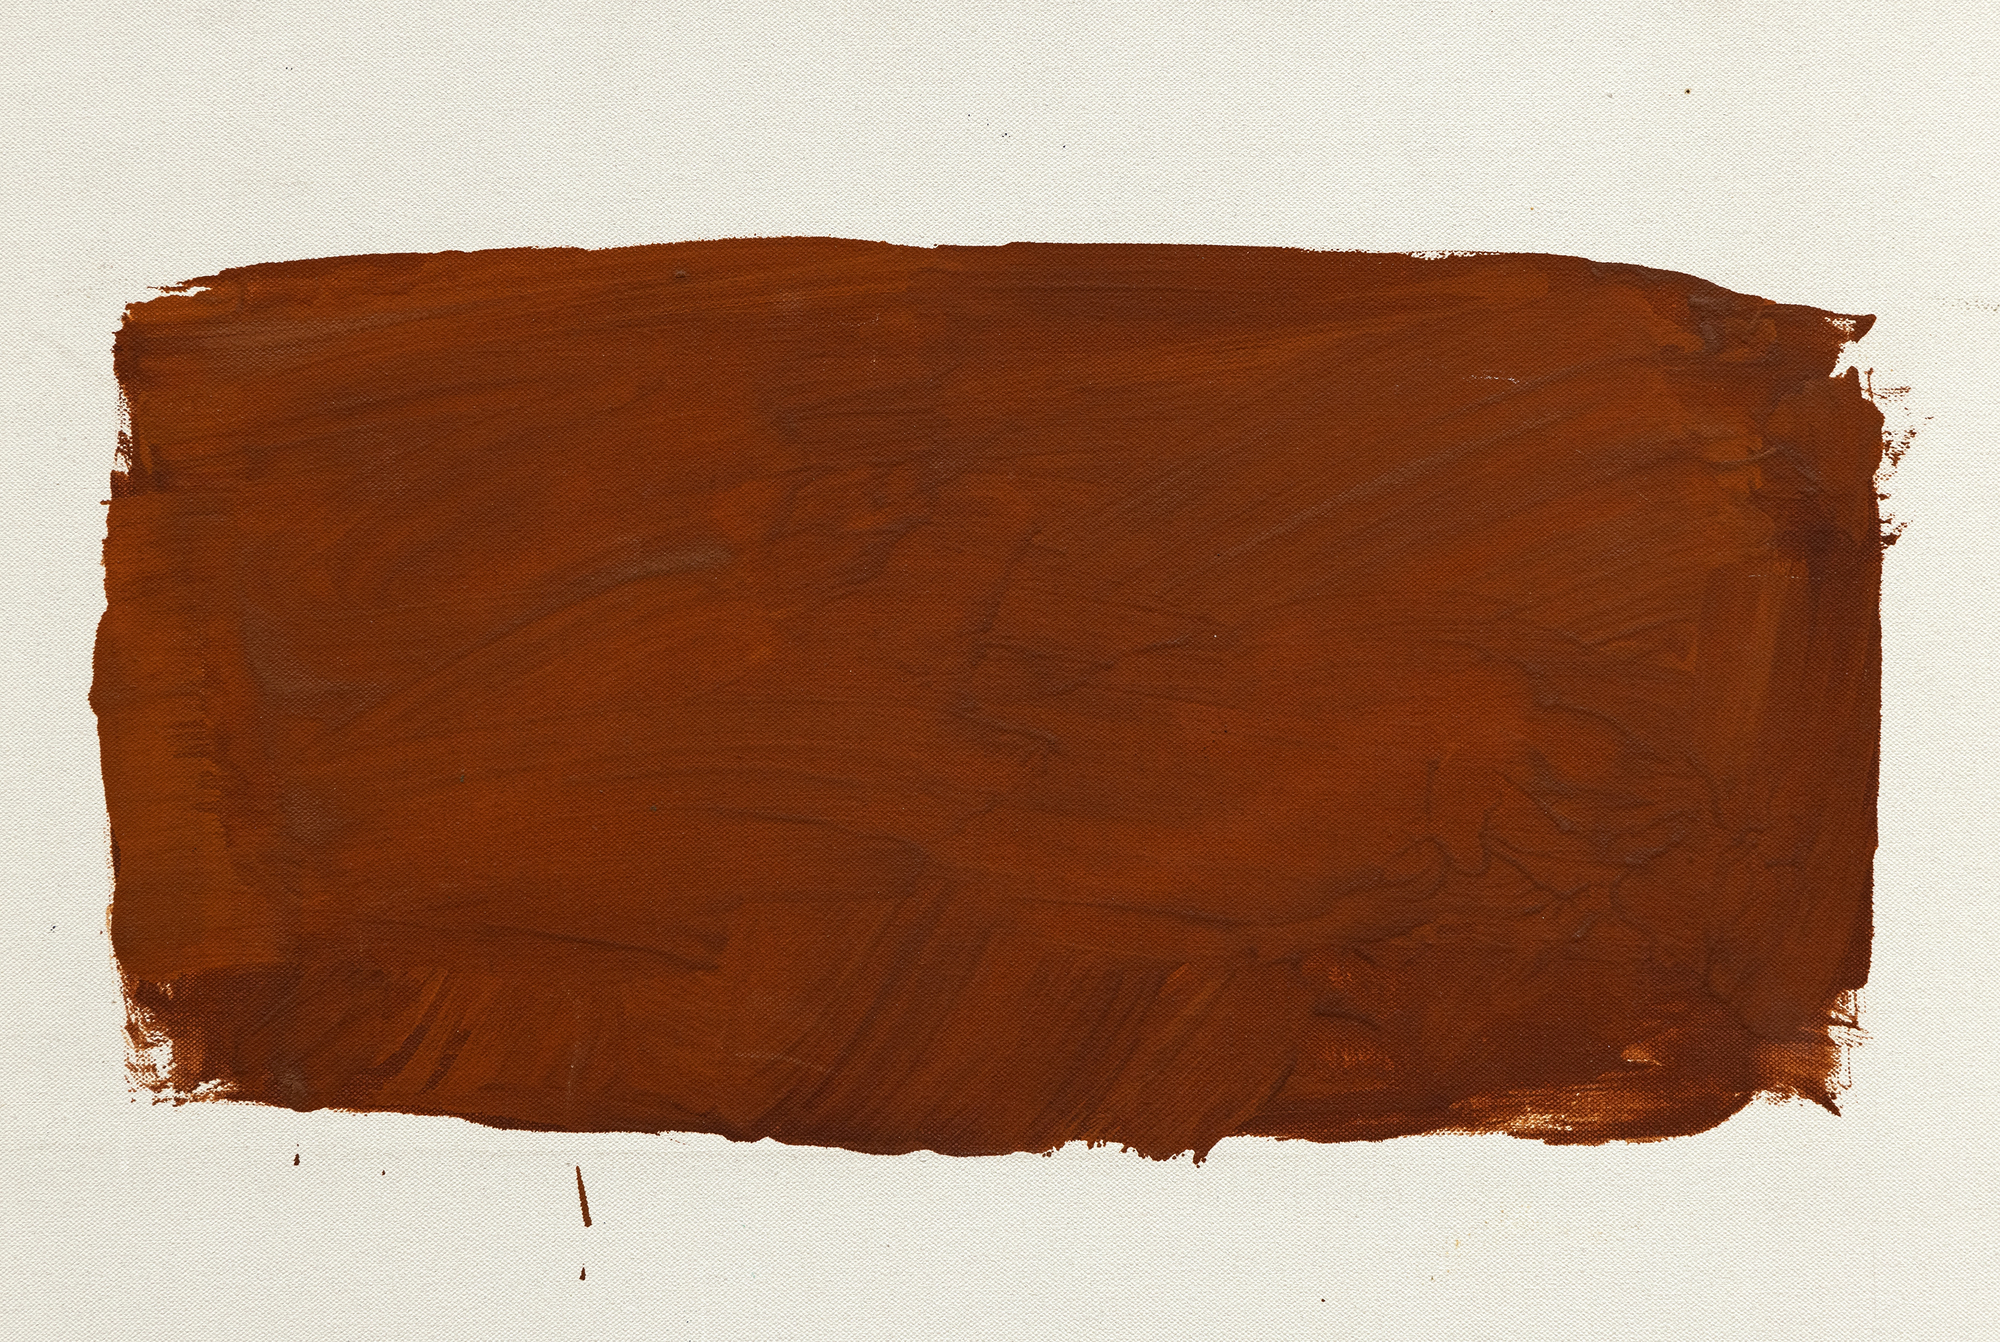 从 20 世纪 50 年代末到 60 年代中期，雷-帕克早期对色域绘画的贡献以其鲜活、清新的特质脱颖而出。帕克在用石膏粉预处理过的大画布上，用生猛的笔触排列出两个或更多粗犷的色块。这些色块的色彩饱和而微妙，展现出一种独特的活力。虽然帕克的构图可能会让人联想到罗斯科的作品，但坚实有力的色彩表现方式却使其与众不同。帕克的作品保持了纽约画派的宏大规模和活力，但又与抽象表现主义不同，他摒弃了抽象表现主义常有的强烈情感，接受了抽象表现主义运动的愿景，没有典型的悲怆。